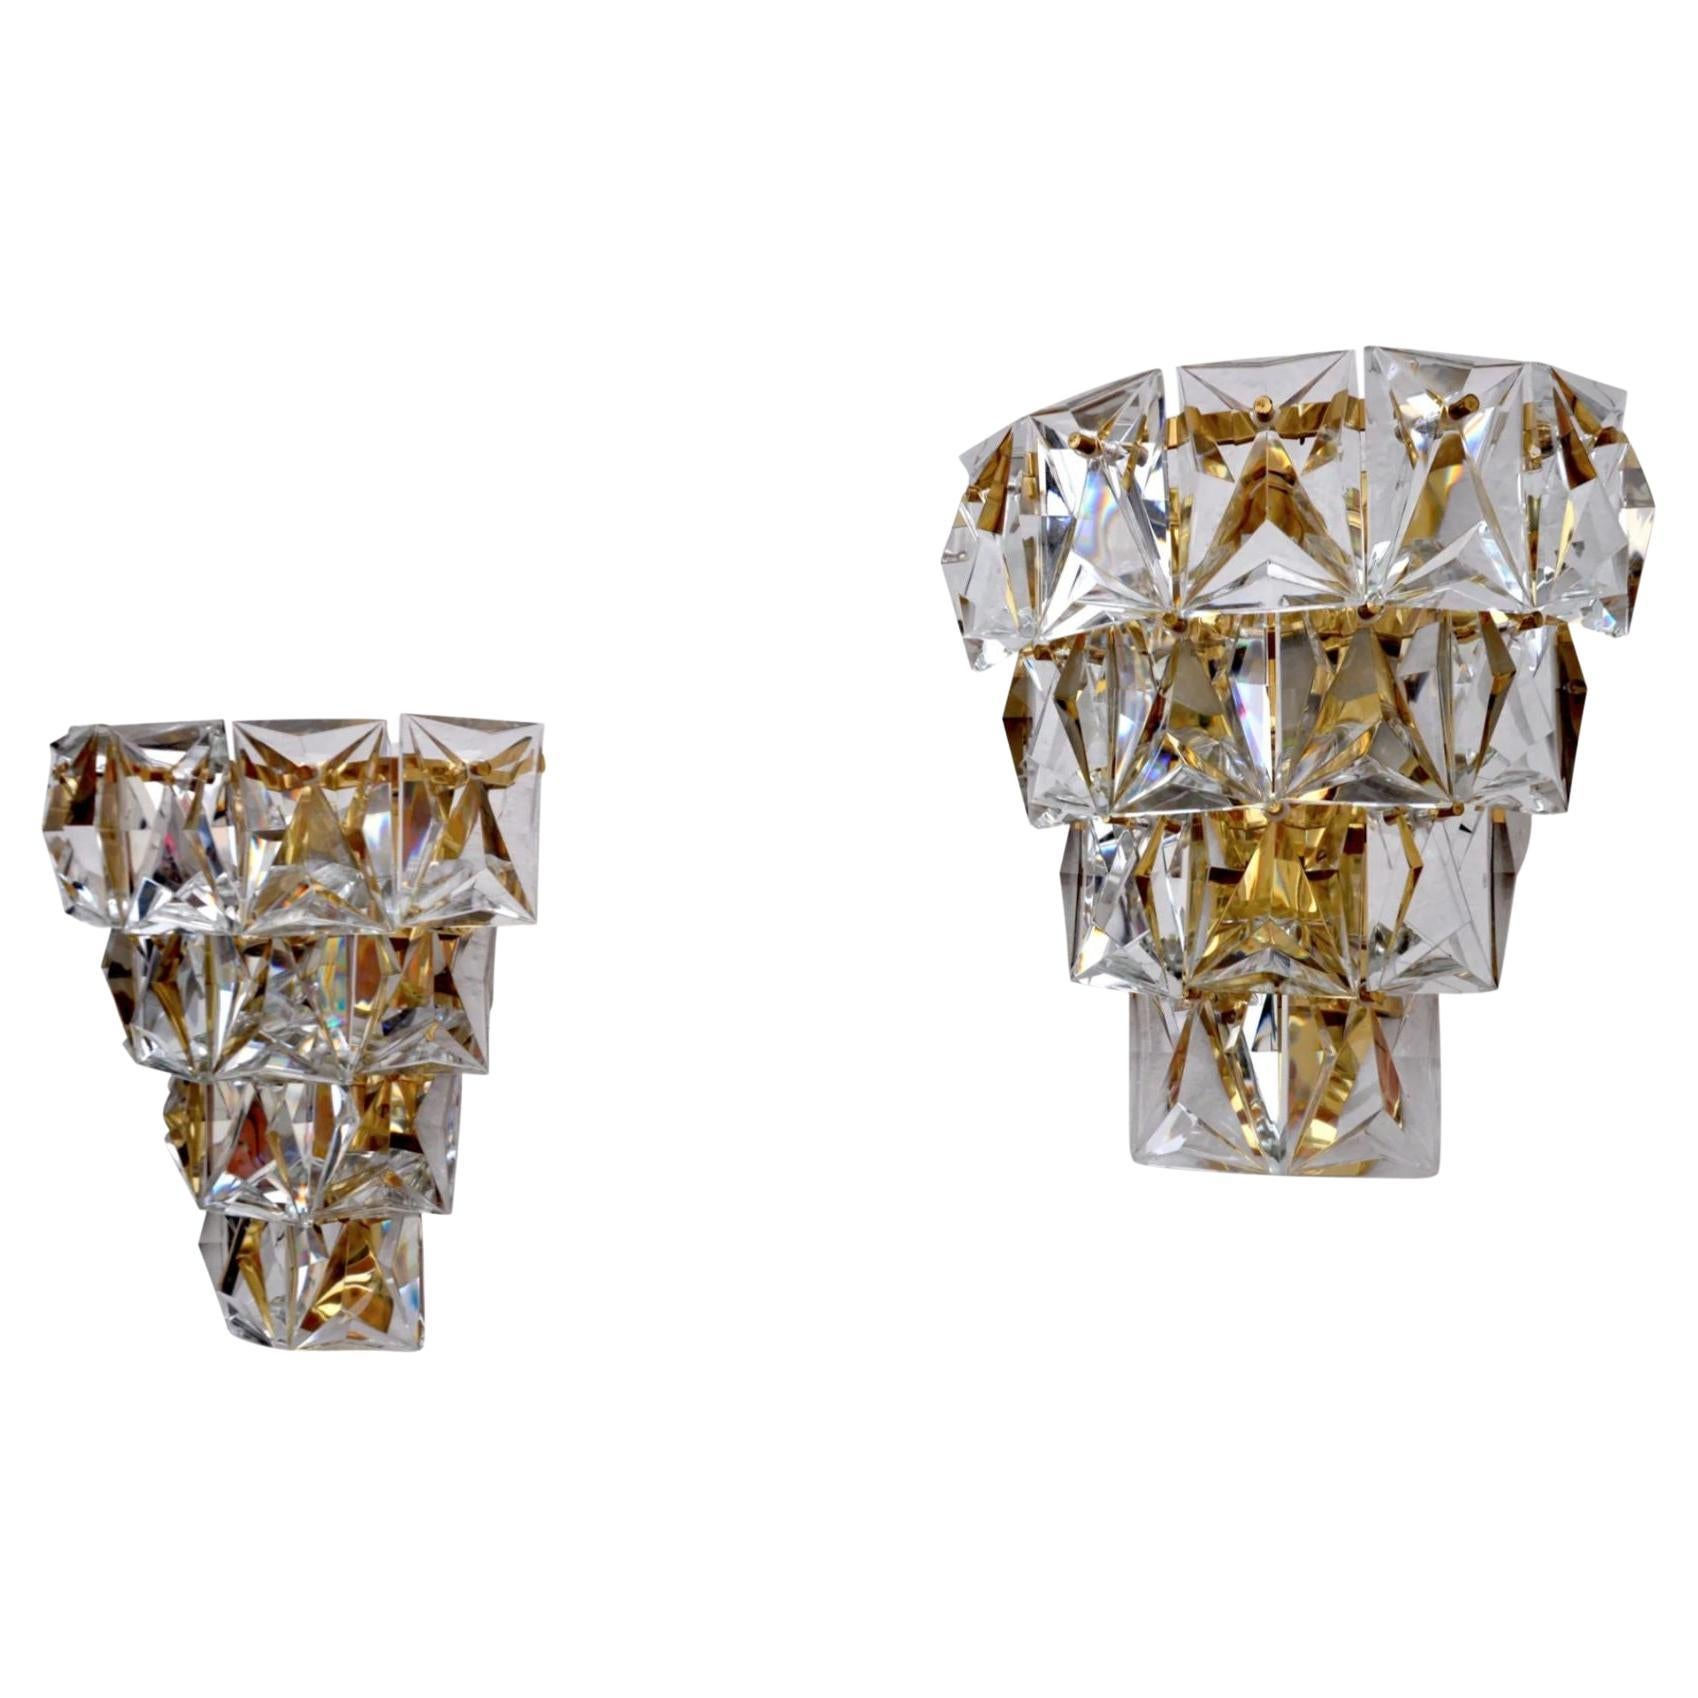 Kinkeldey-Kristall-Wandleuchter aus der Jahrhundertmitte, ein Paar